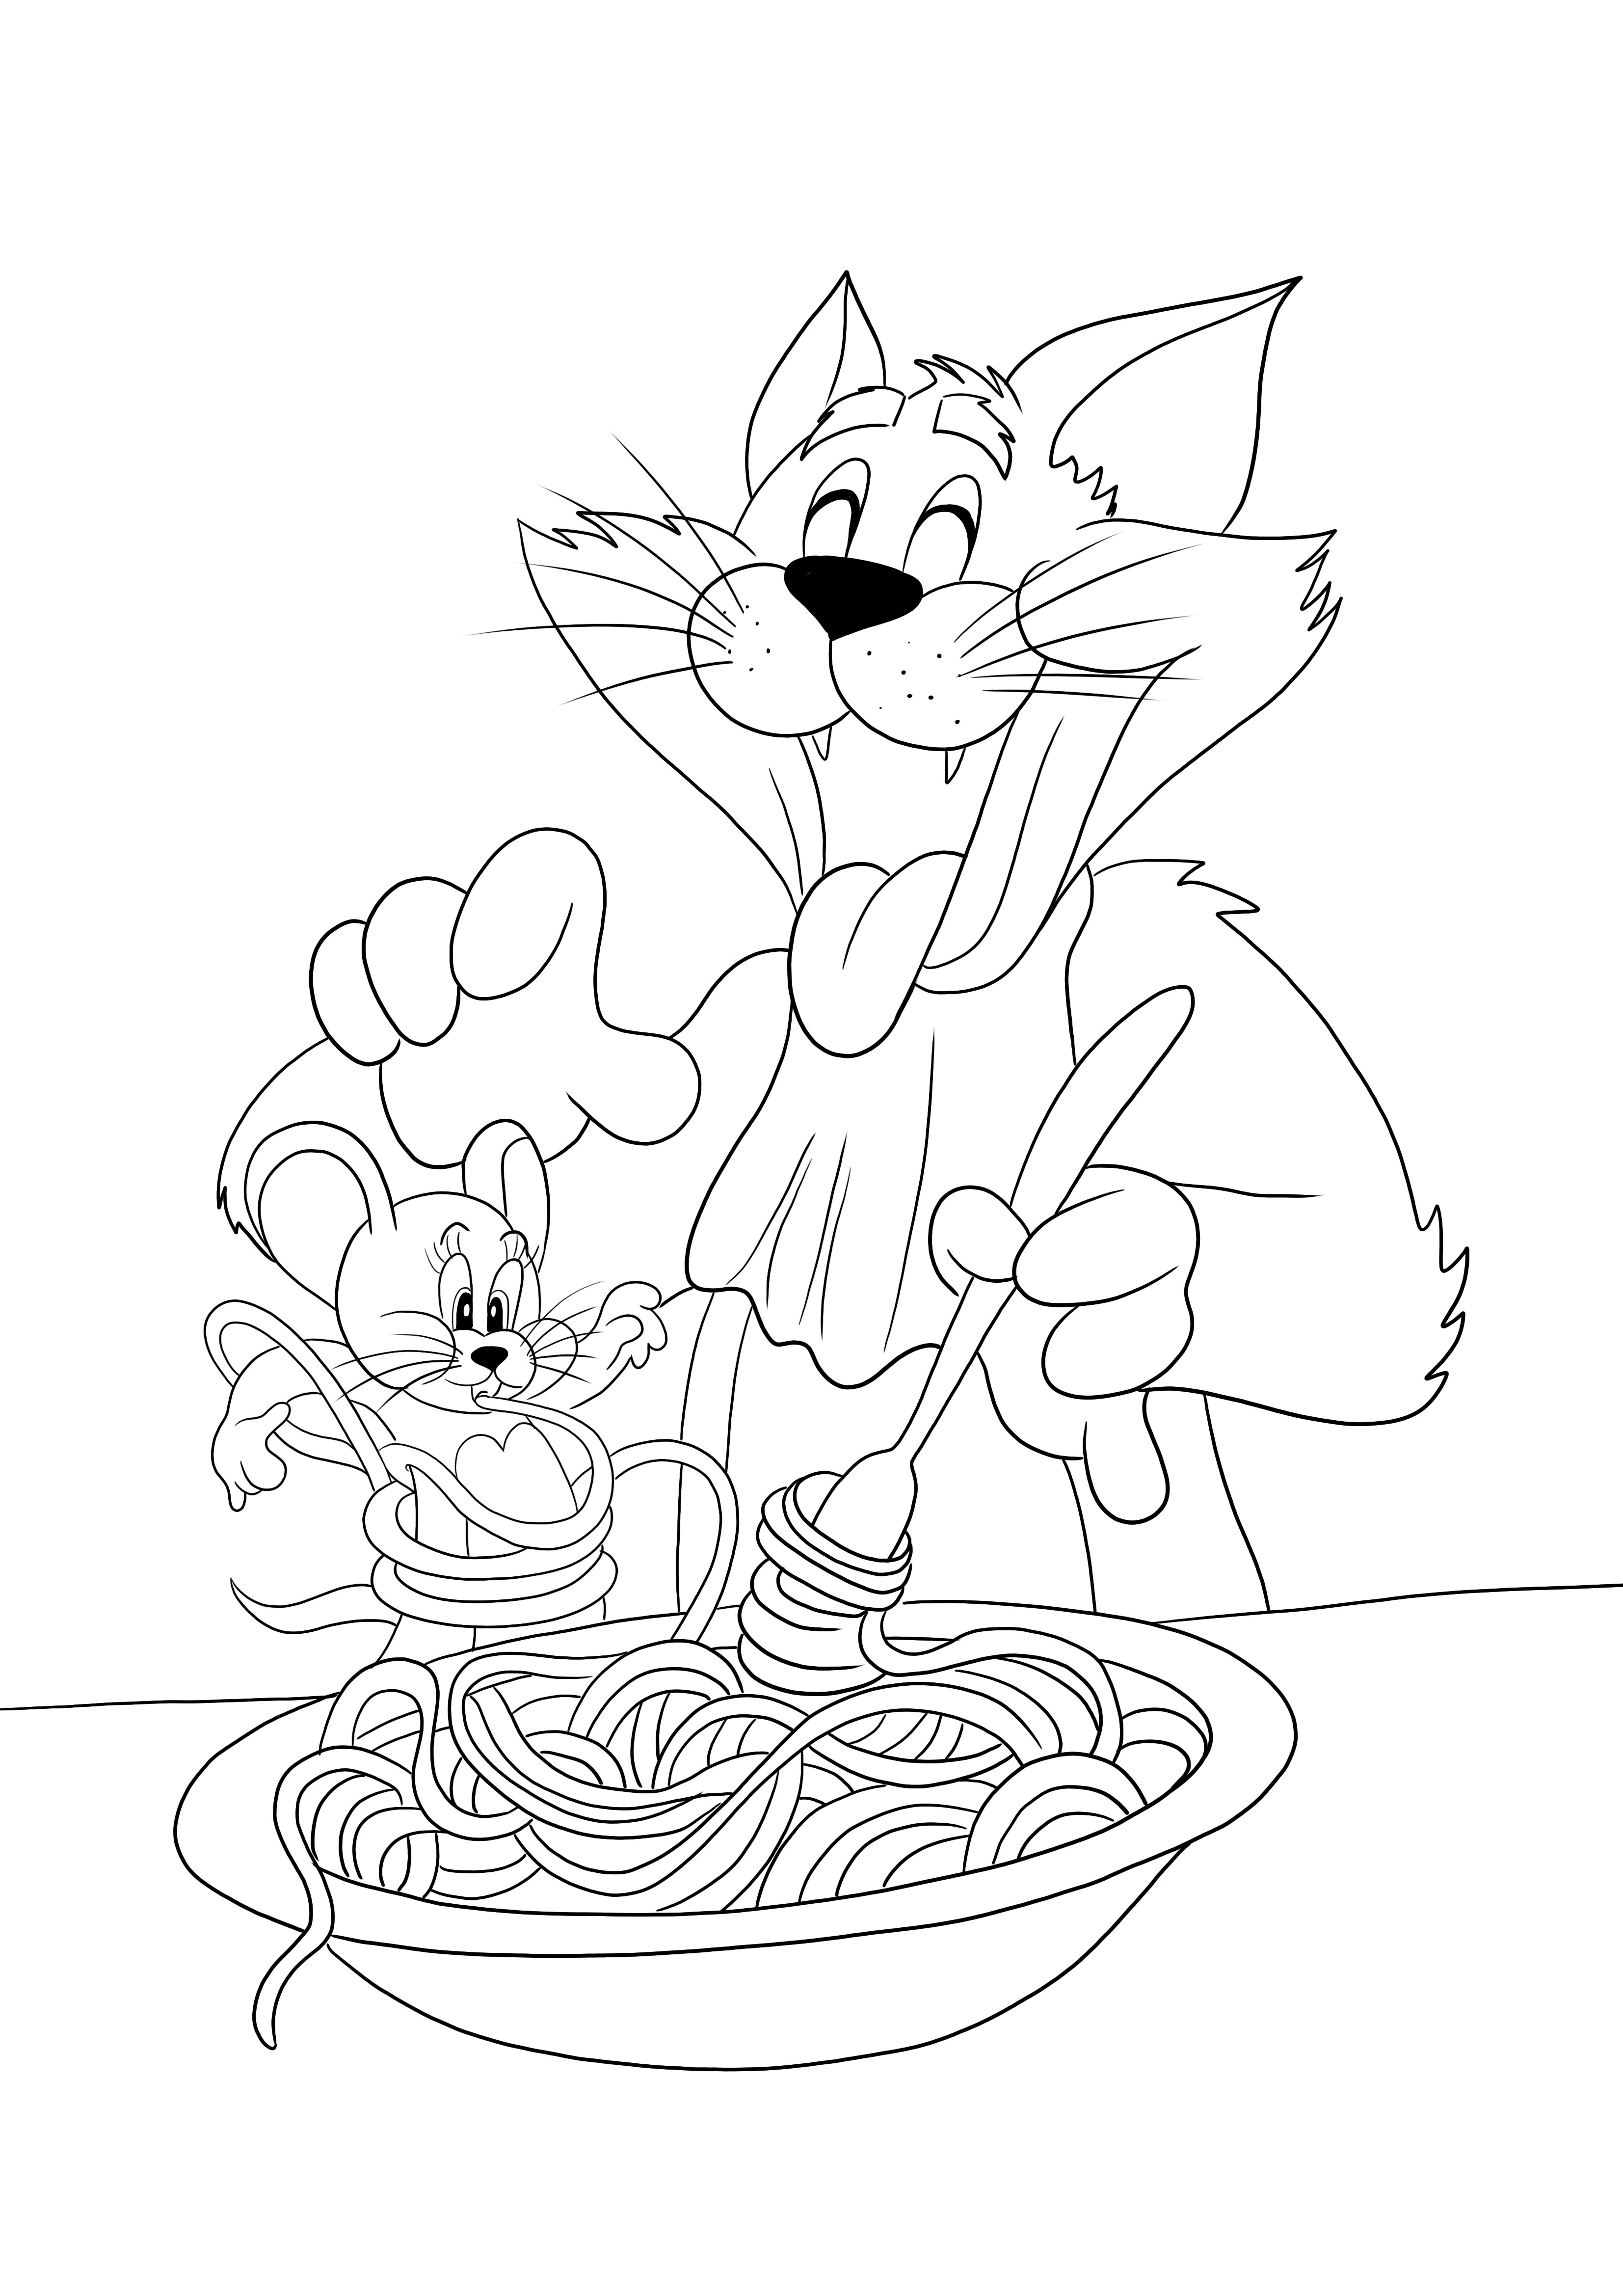 Tom tésztát eszik, Jerry pedig egy vicces nyomtatható színezésre készen